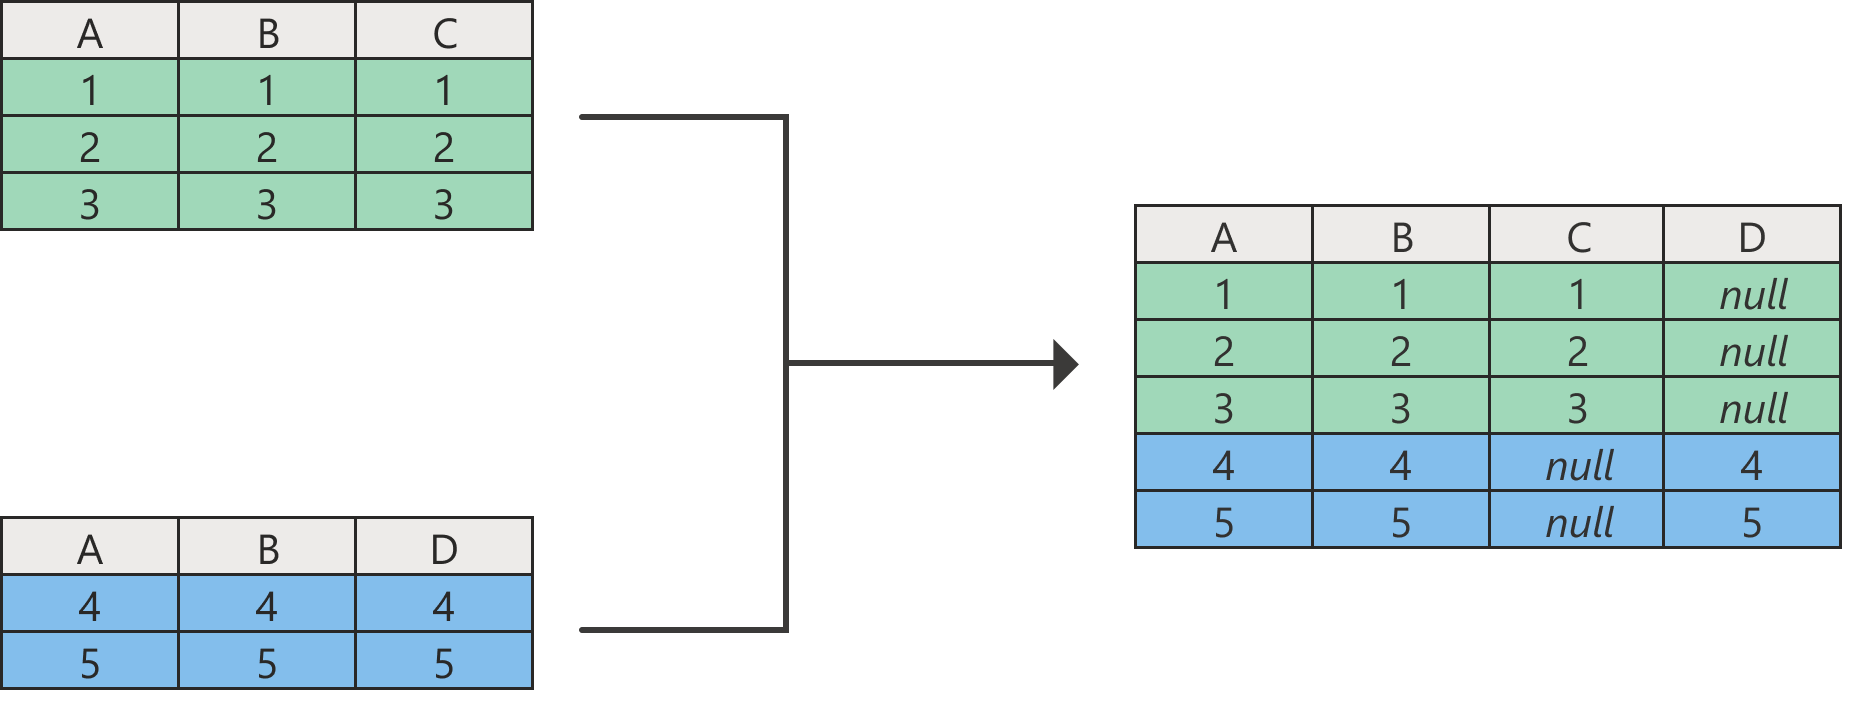 Diagramm mit dem Ergebnis eines Anfügevorgangs mit Nullwerten in Spalten, die in einer der ursprünglichen Tabellen nicht vorhanden sind.